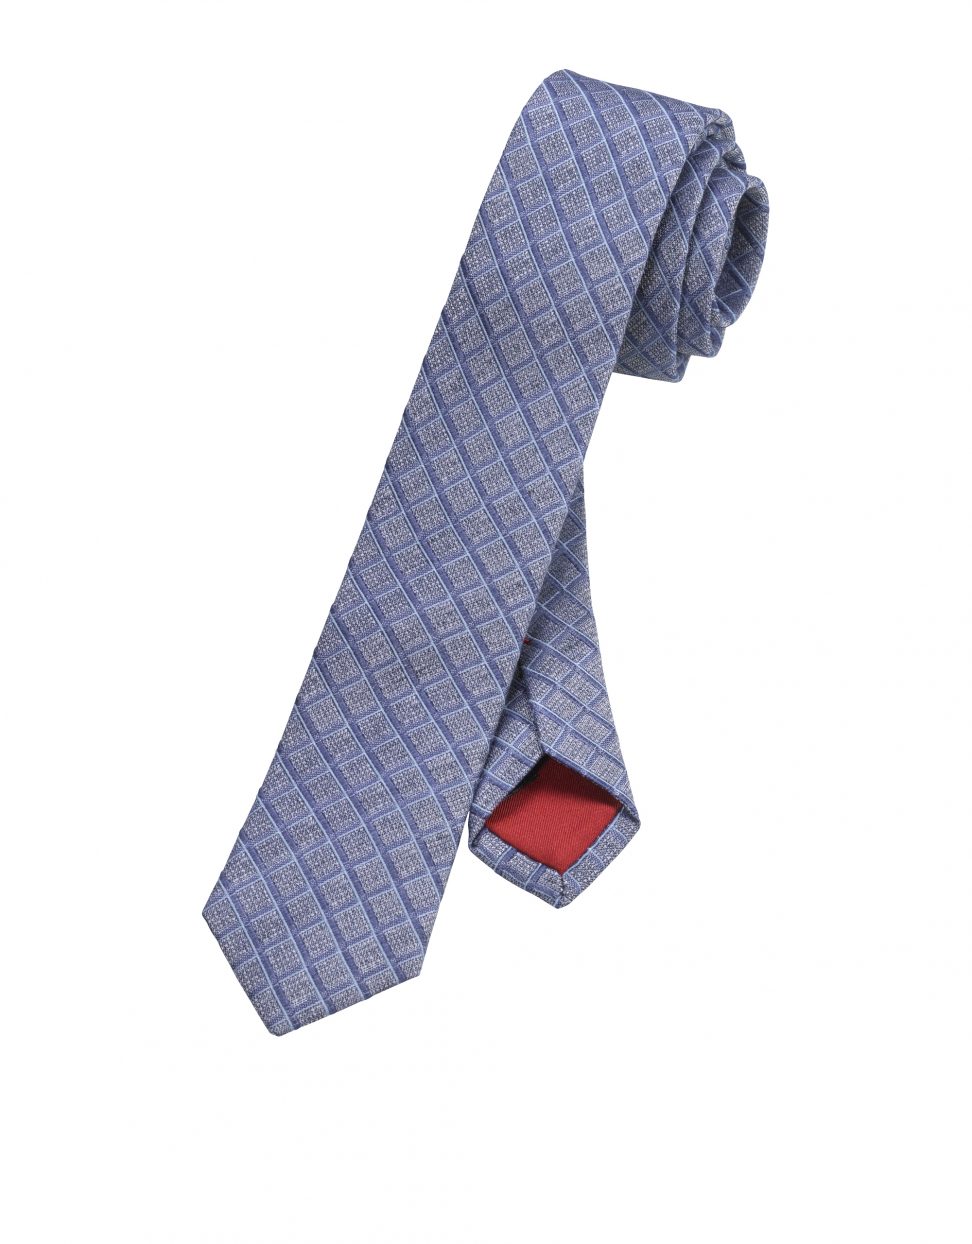 OLYMP krawat super slim niebieski w kratkę 17393018 5cm